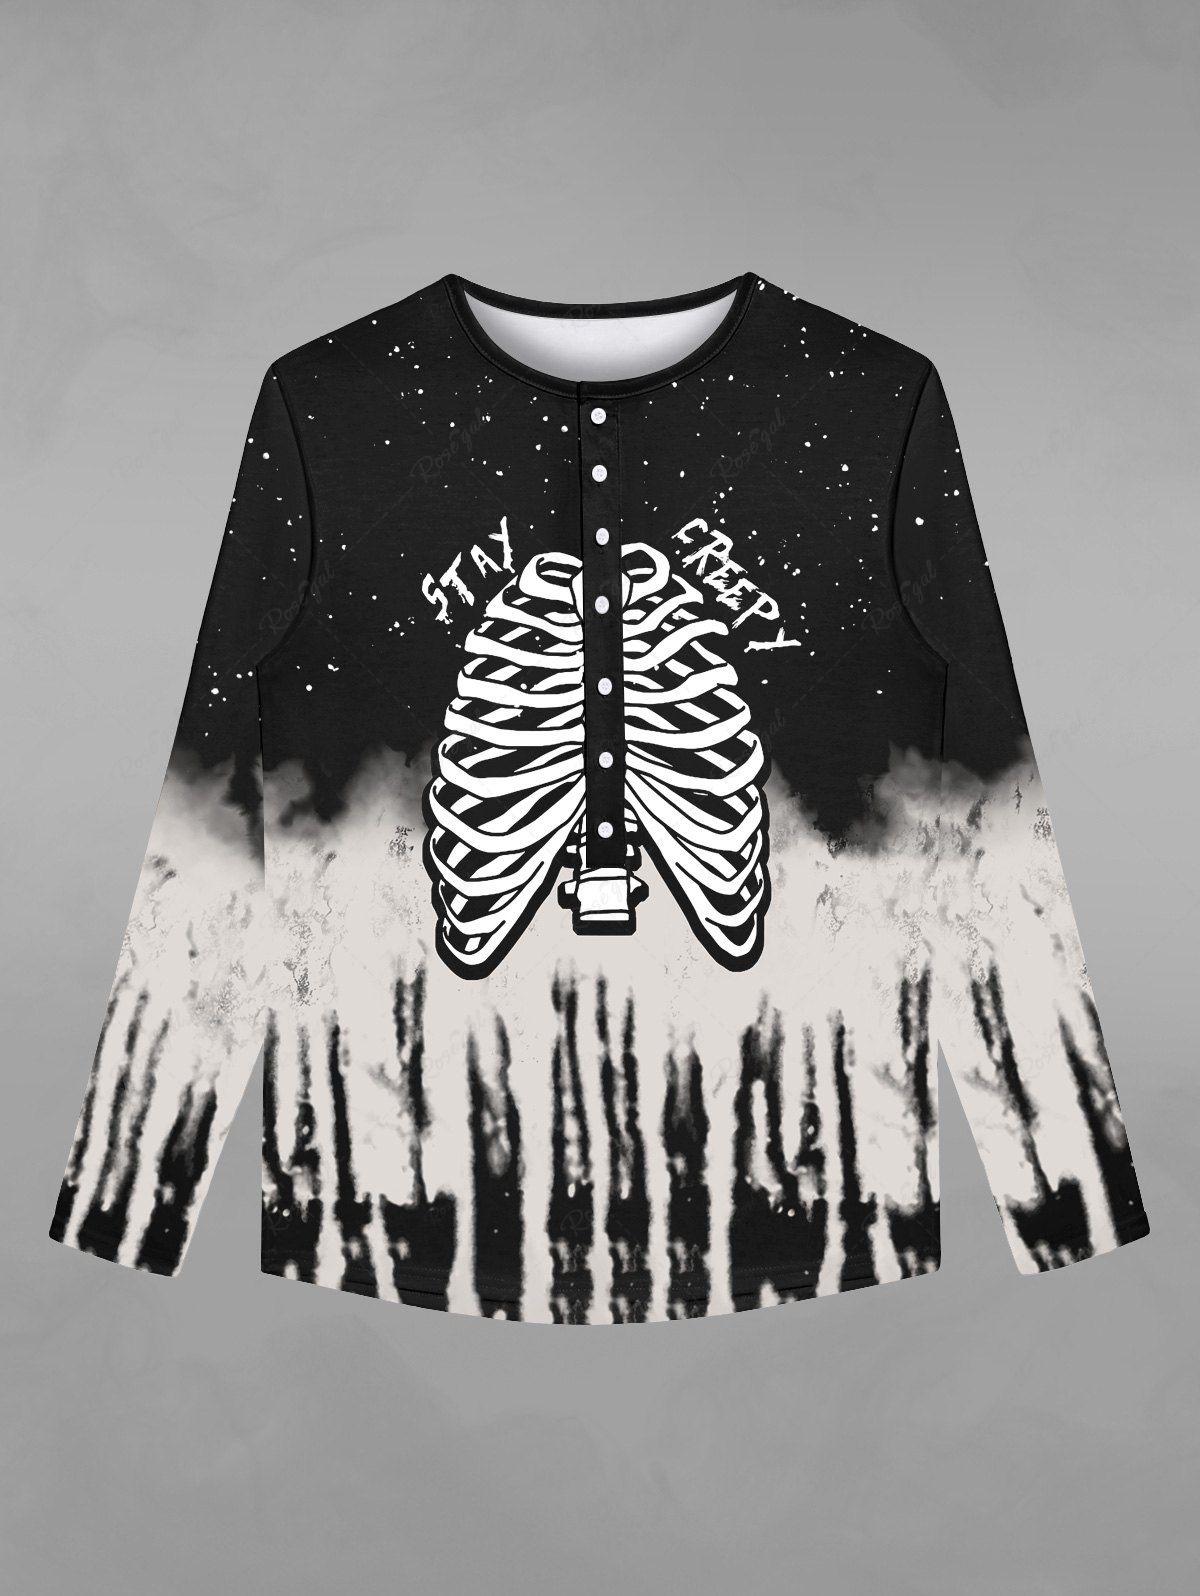 T-shirt D'Halloween Déchiré Gothique Squelette Galaxie Imprimés avec Boutons Noir 2XL